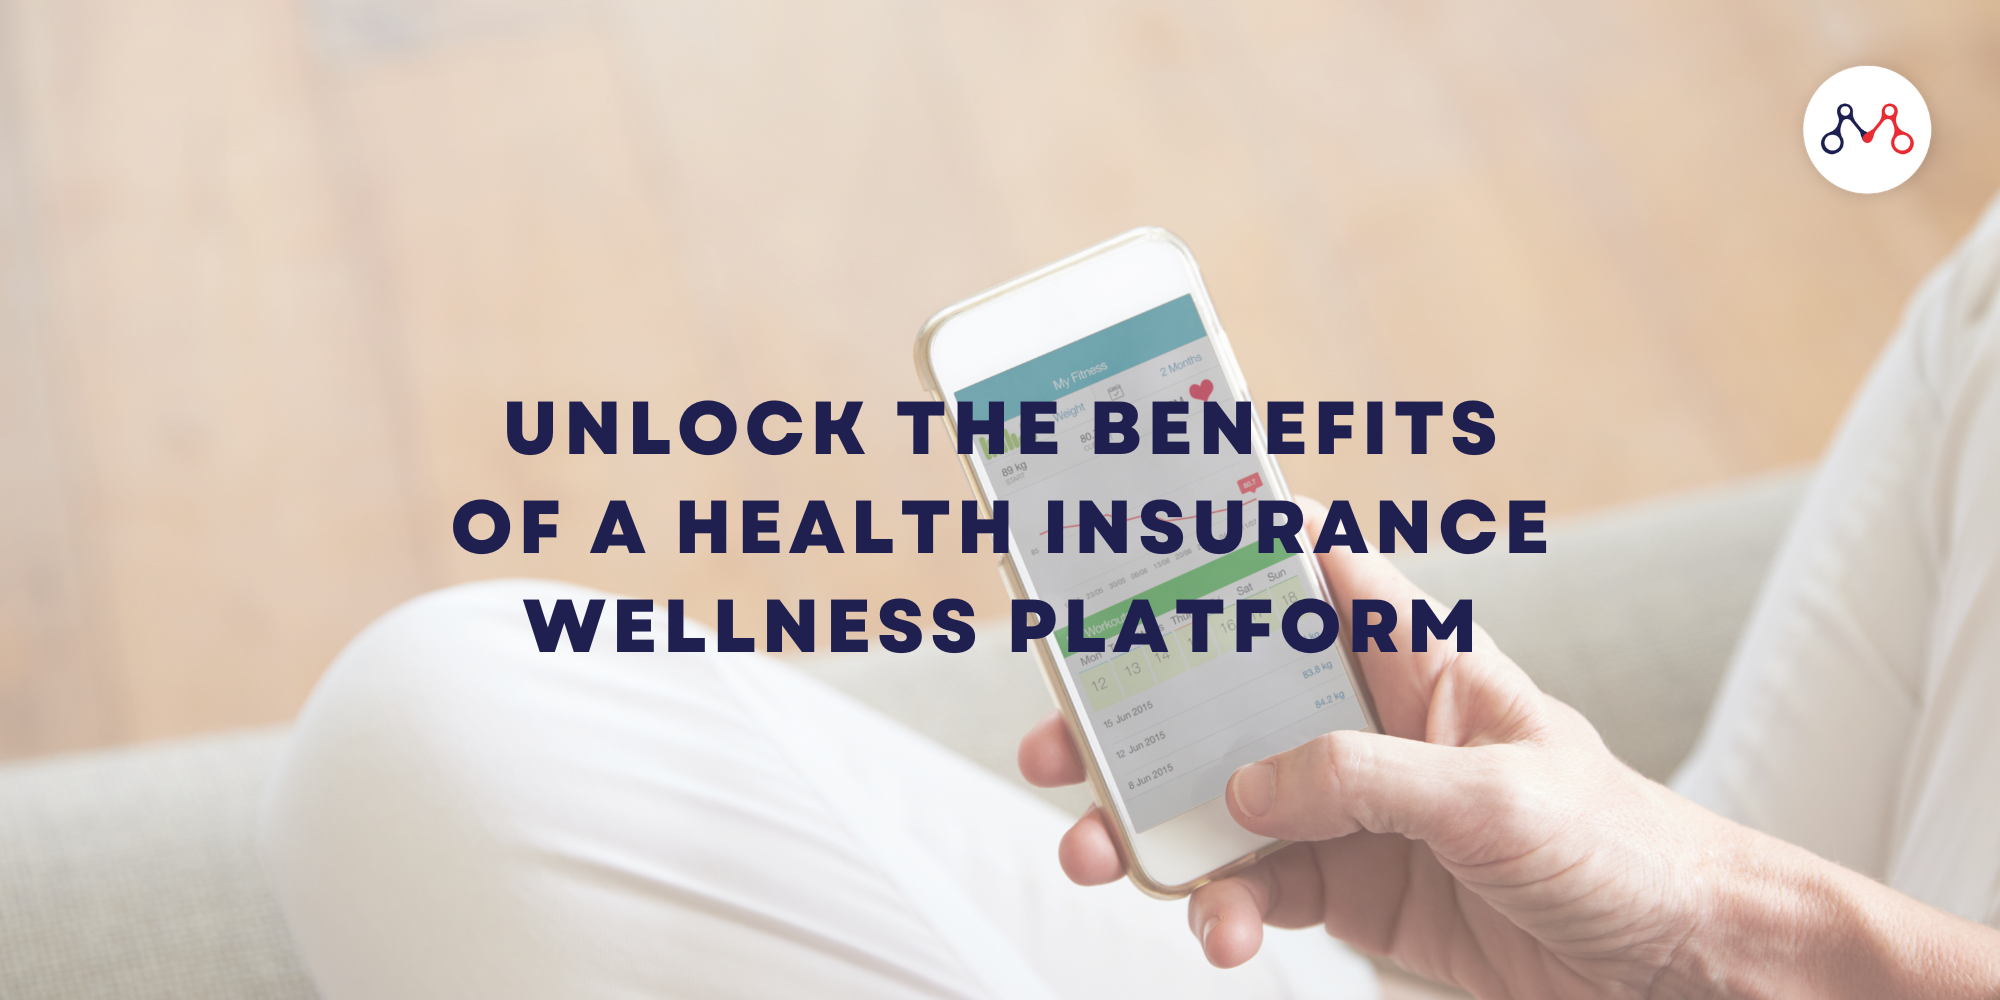 健康保険ウェルネス プラットフォームのメリットを最大限に活用する